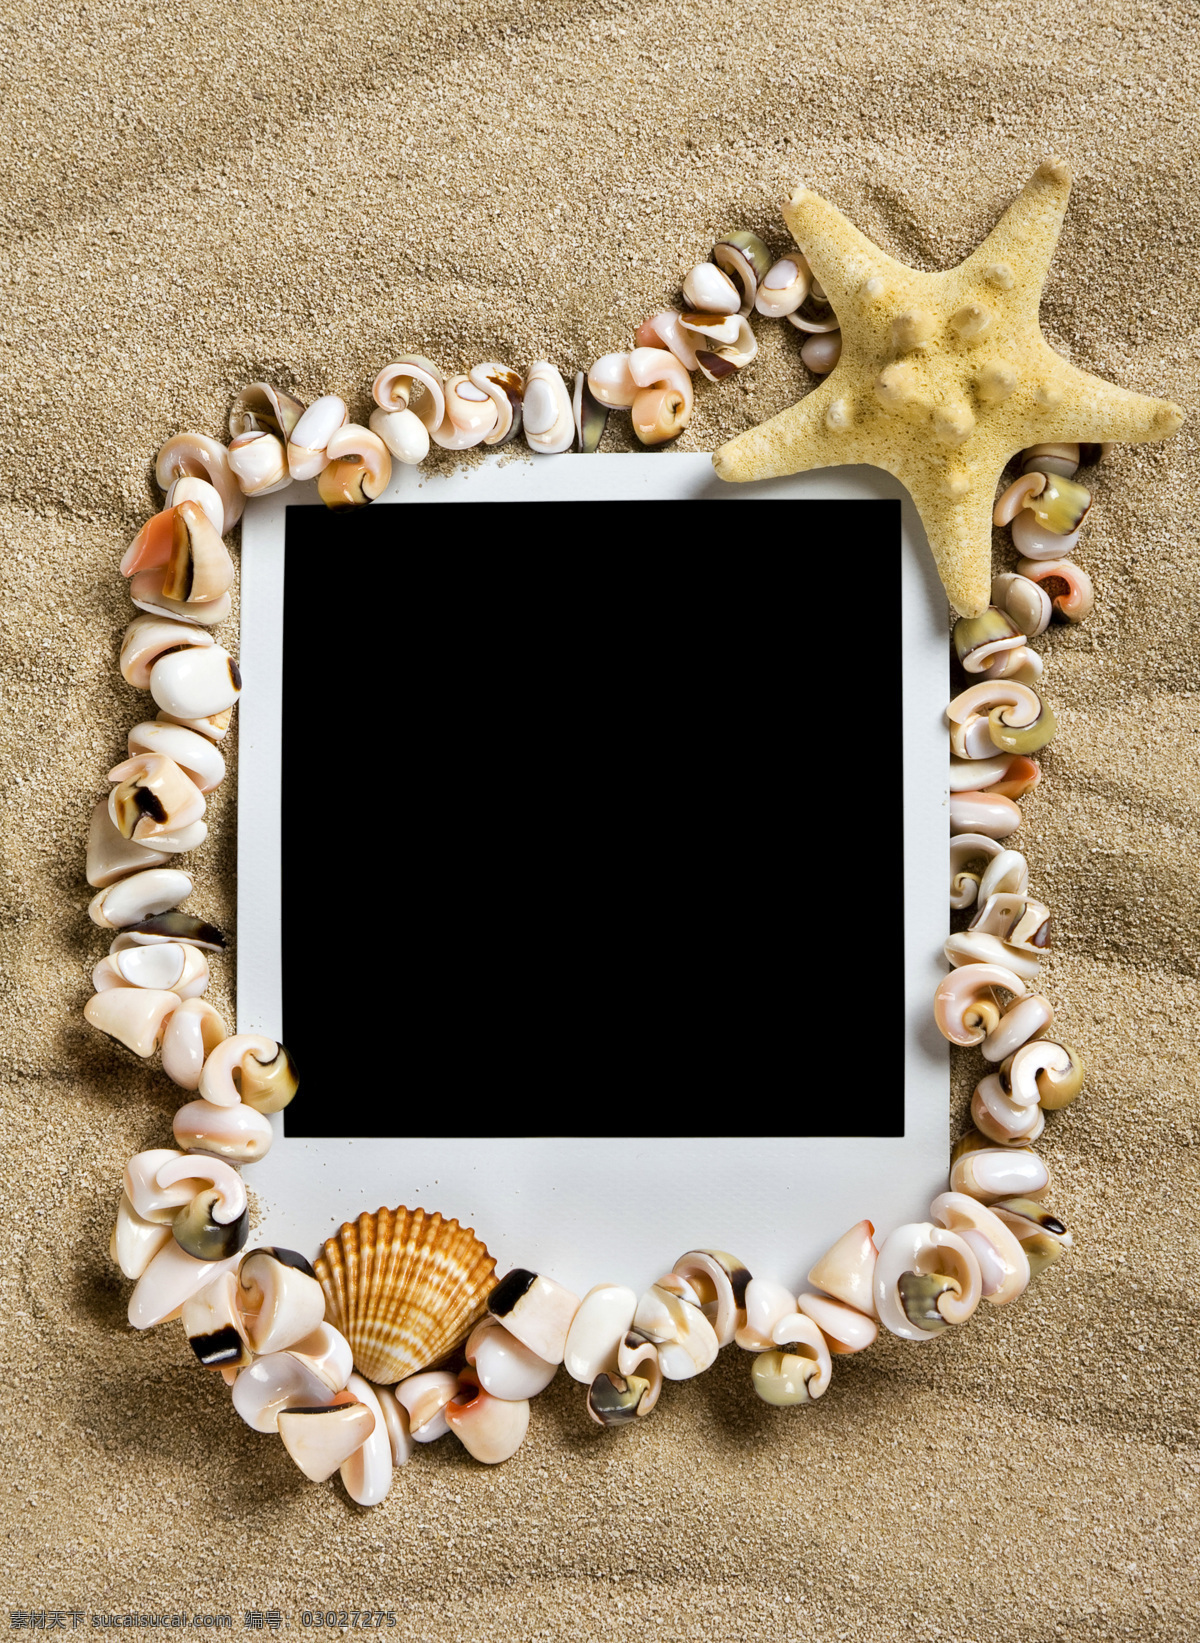 贝壳 边框相框 创意 底纹边框 海边 海滩 海星 星 相片 设计素材 模板下载 海星贝壳相片 沙子 照片纸 相框 五彩贝壳 金色沙滩 户外 组合 分辨率 psd源文件